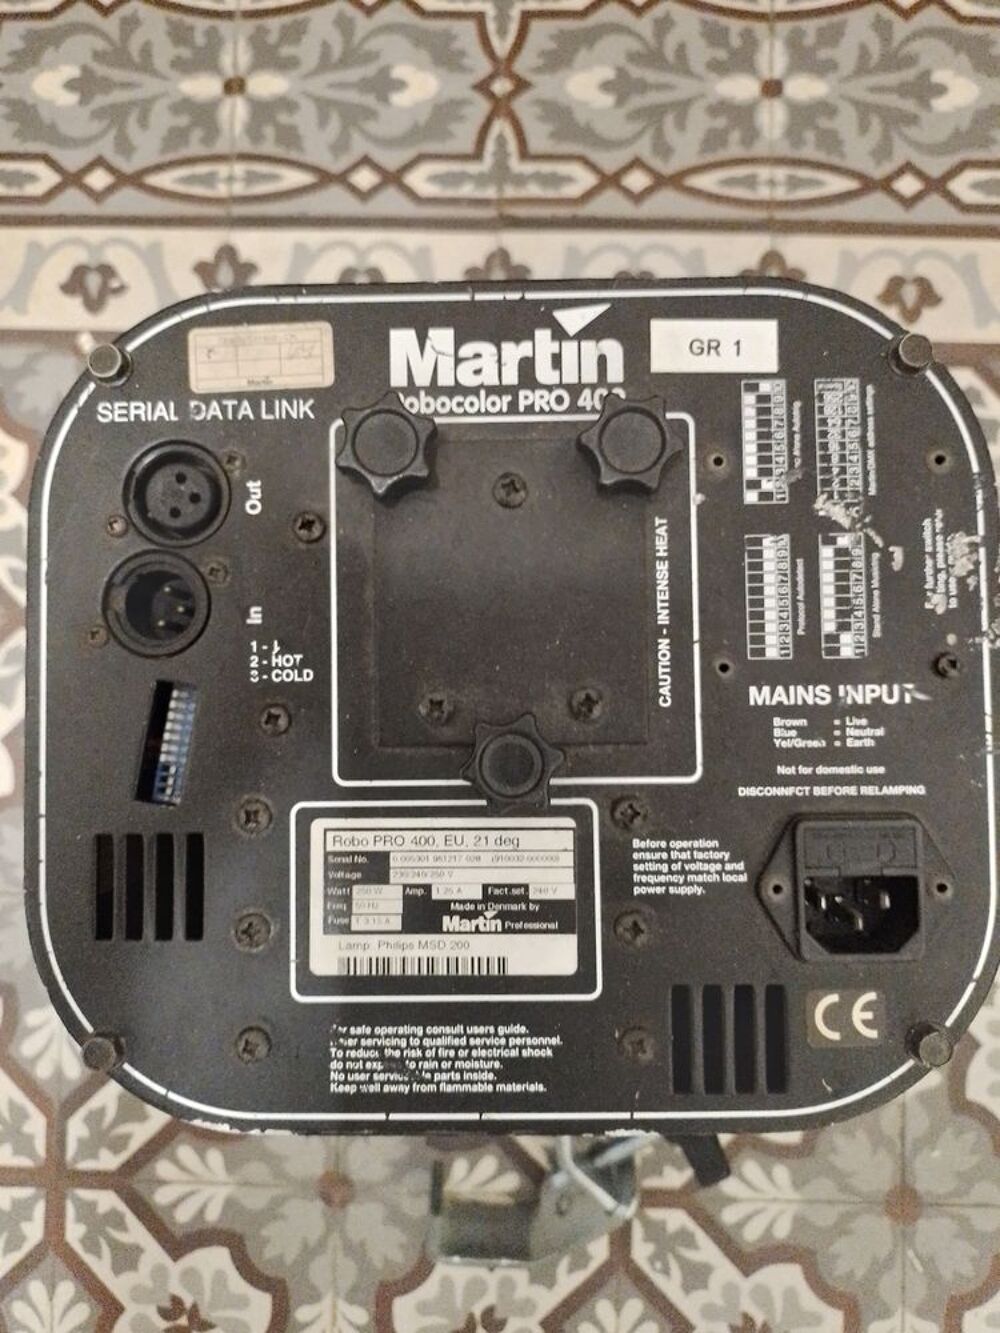 Projecteur Martin robocolor 400 multicouleur Audio et hifi